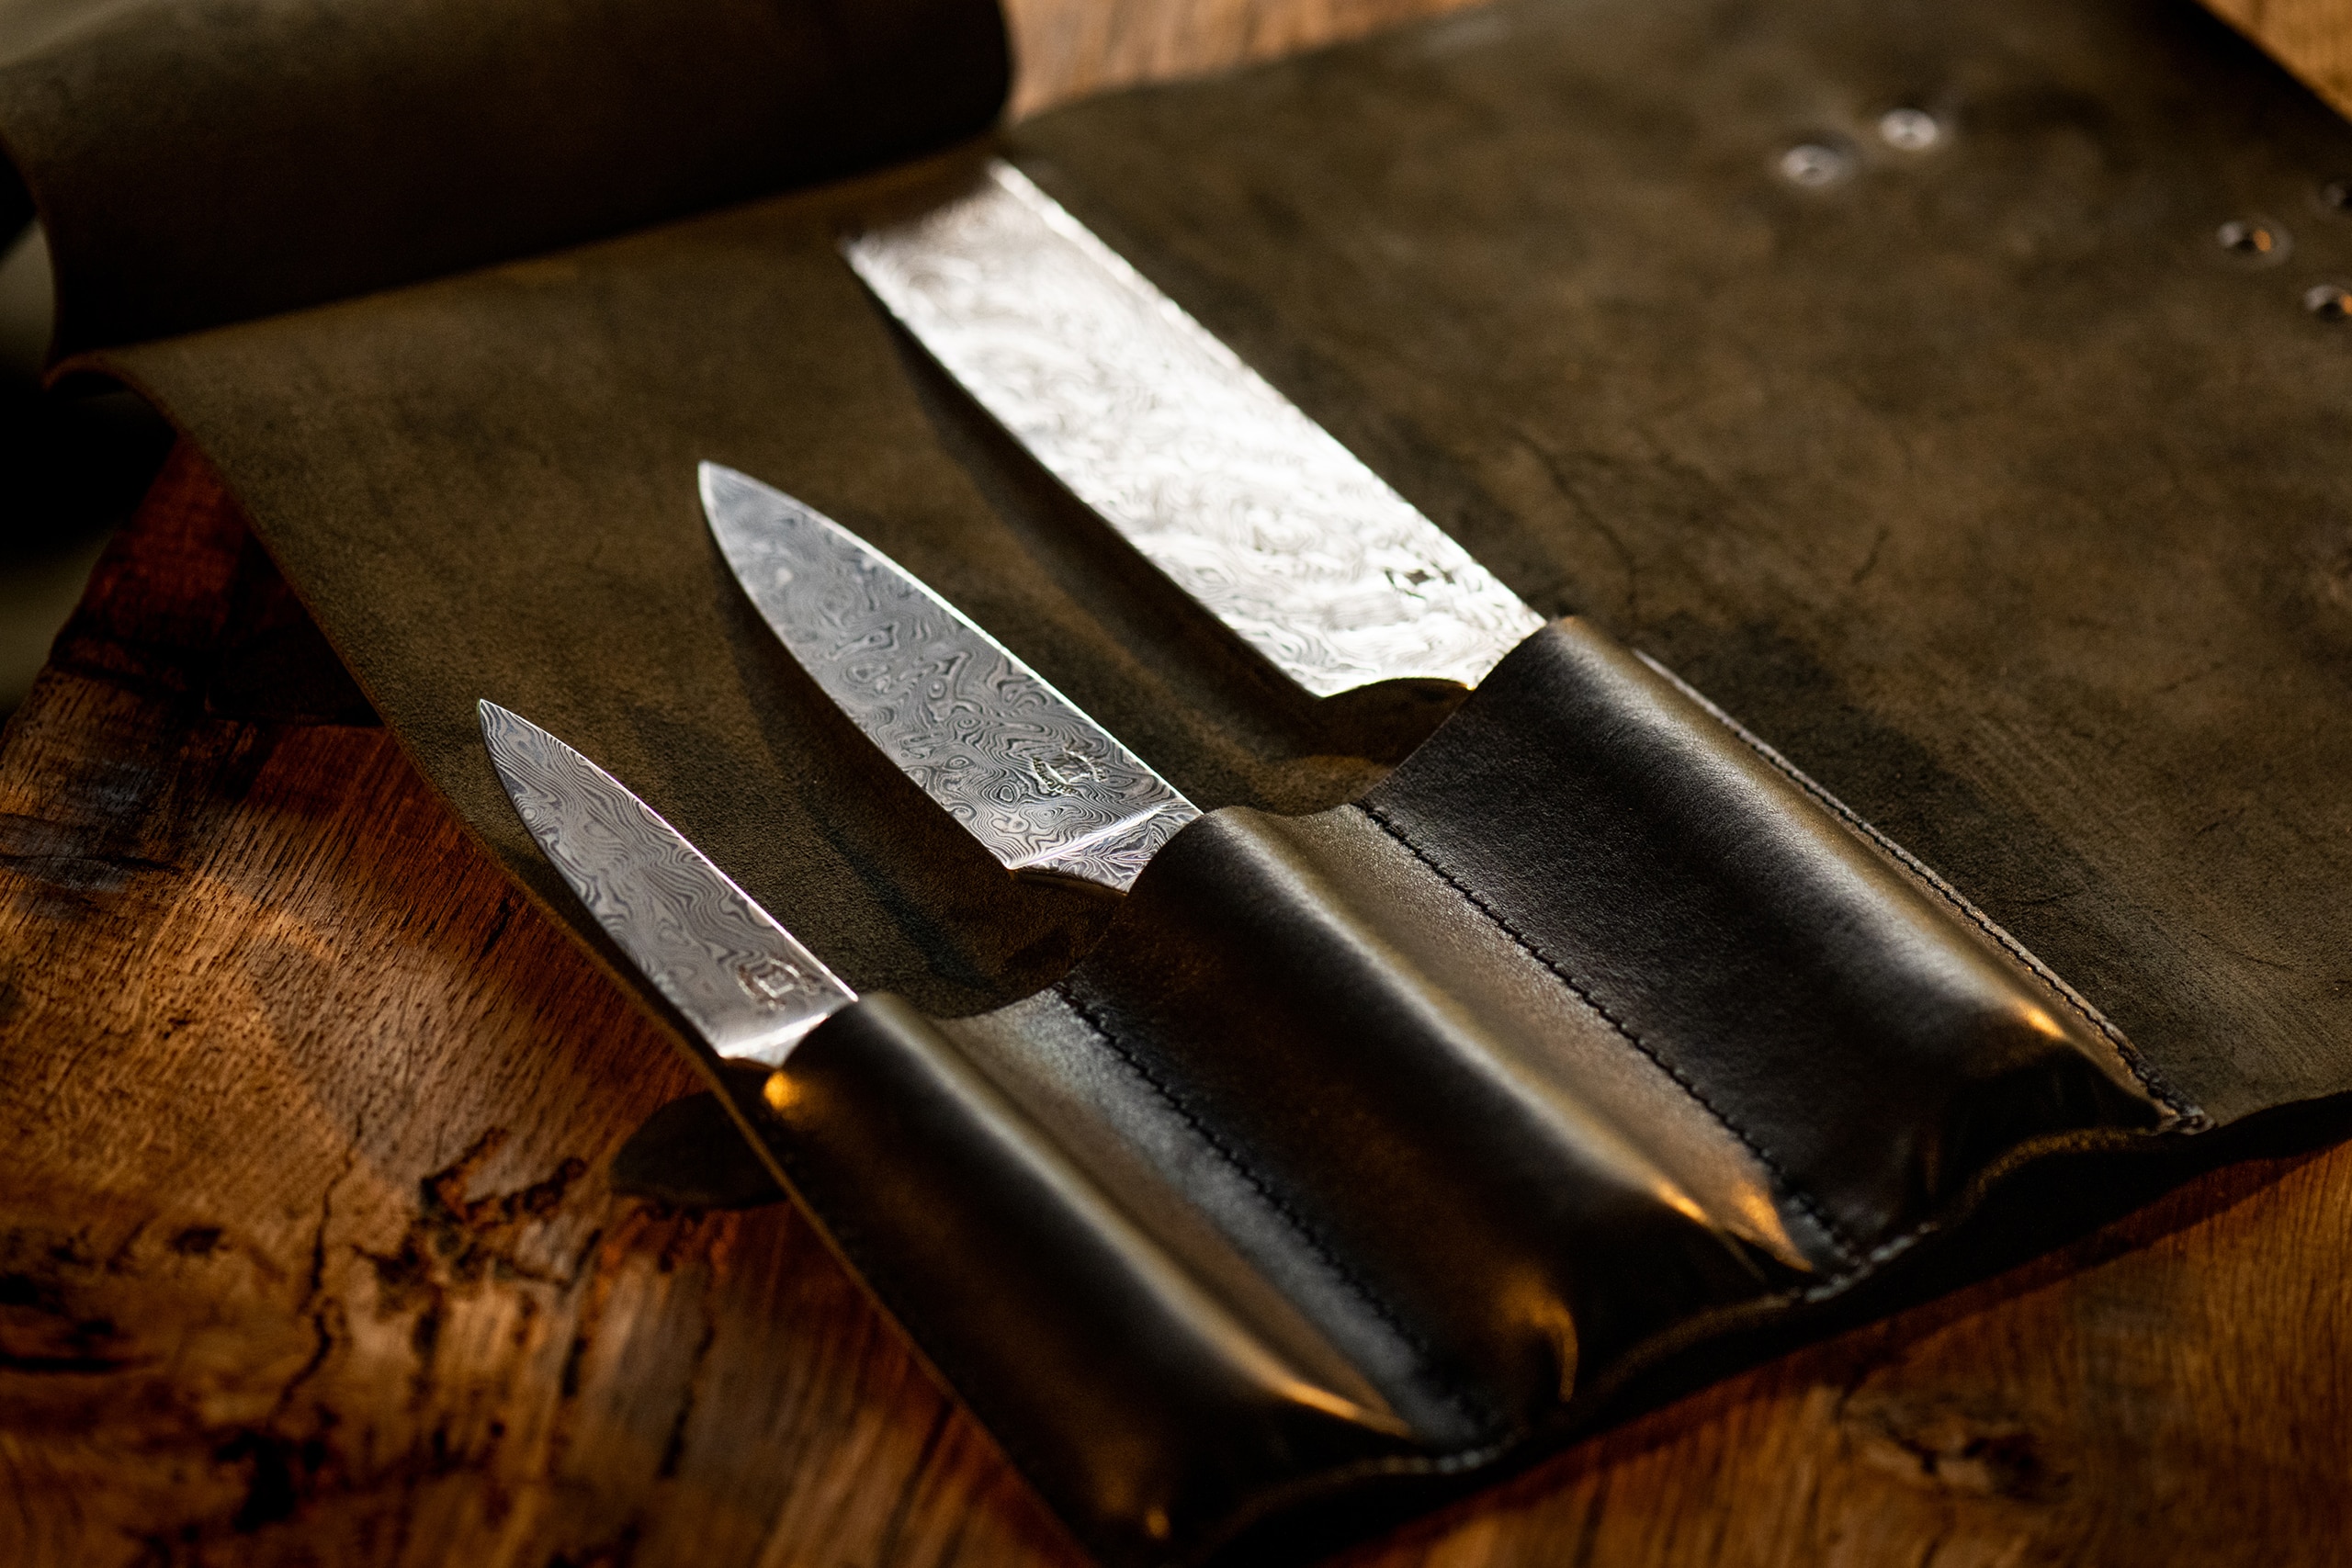 Trois couteaux avec lames en acier damassé, exposés ouverts sur un étui en cuir brun foncé, posés sur une surface en bois vieilli, évoquant un ensemble de couteaux d'artisanat français de qualité.